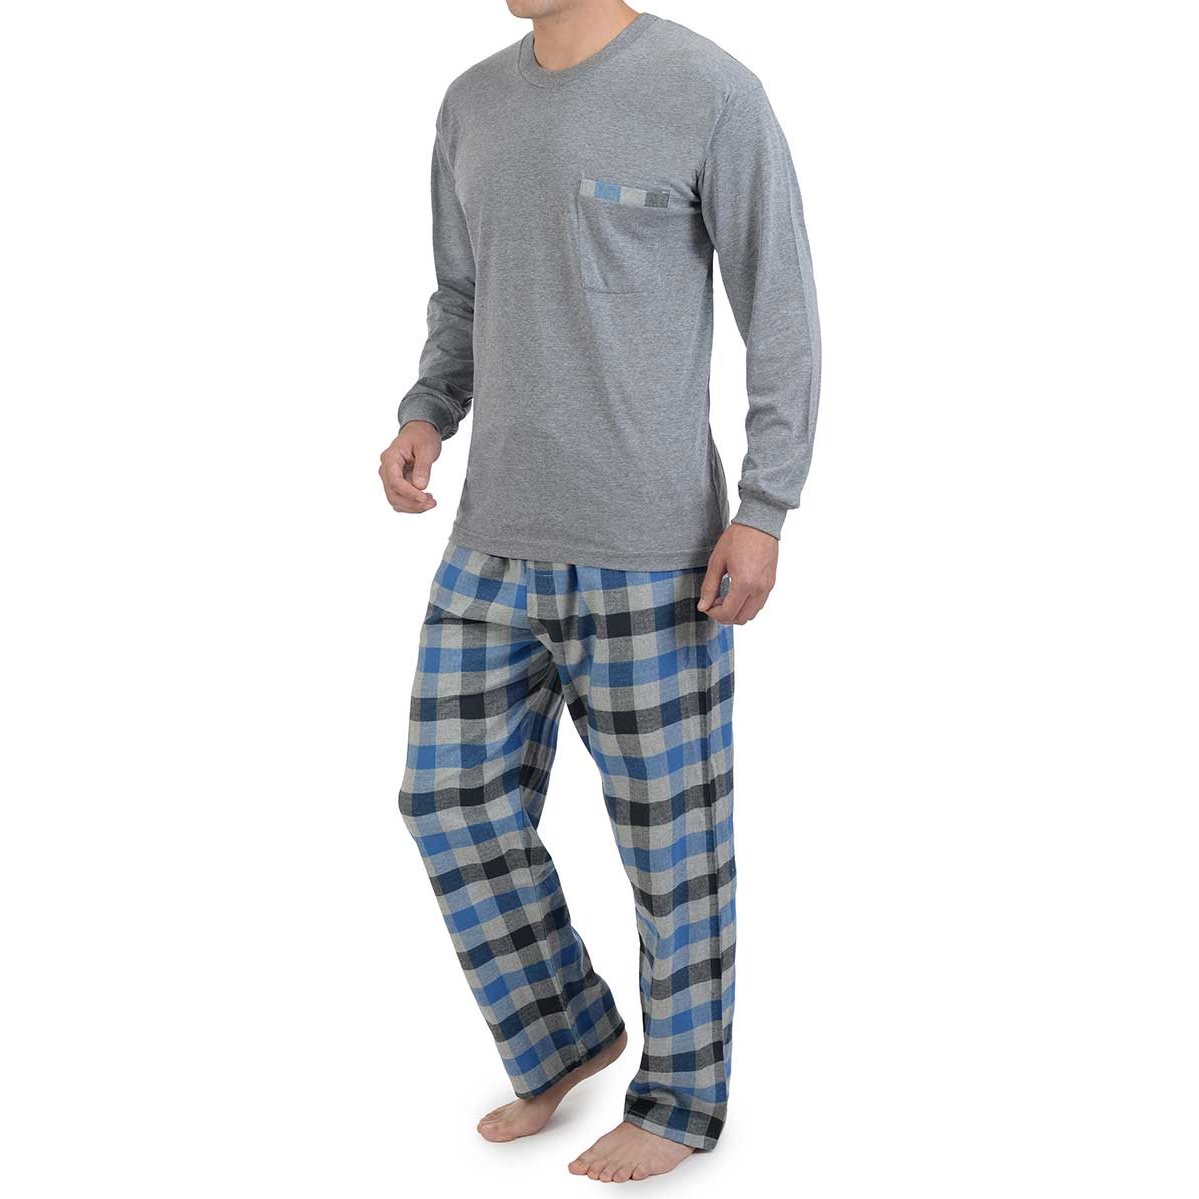 Pijama Franela Cuadros Carlo Corinto Modelo Elo 2131 para para Hombre